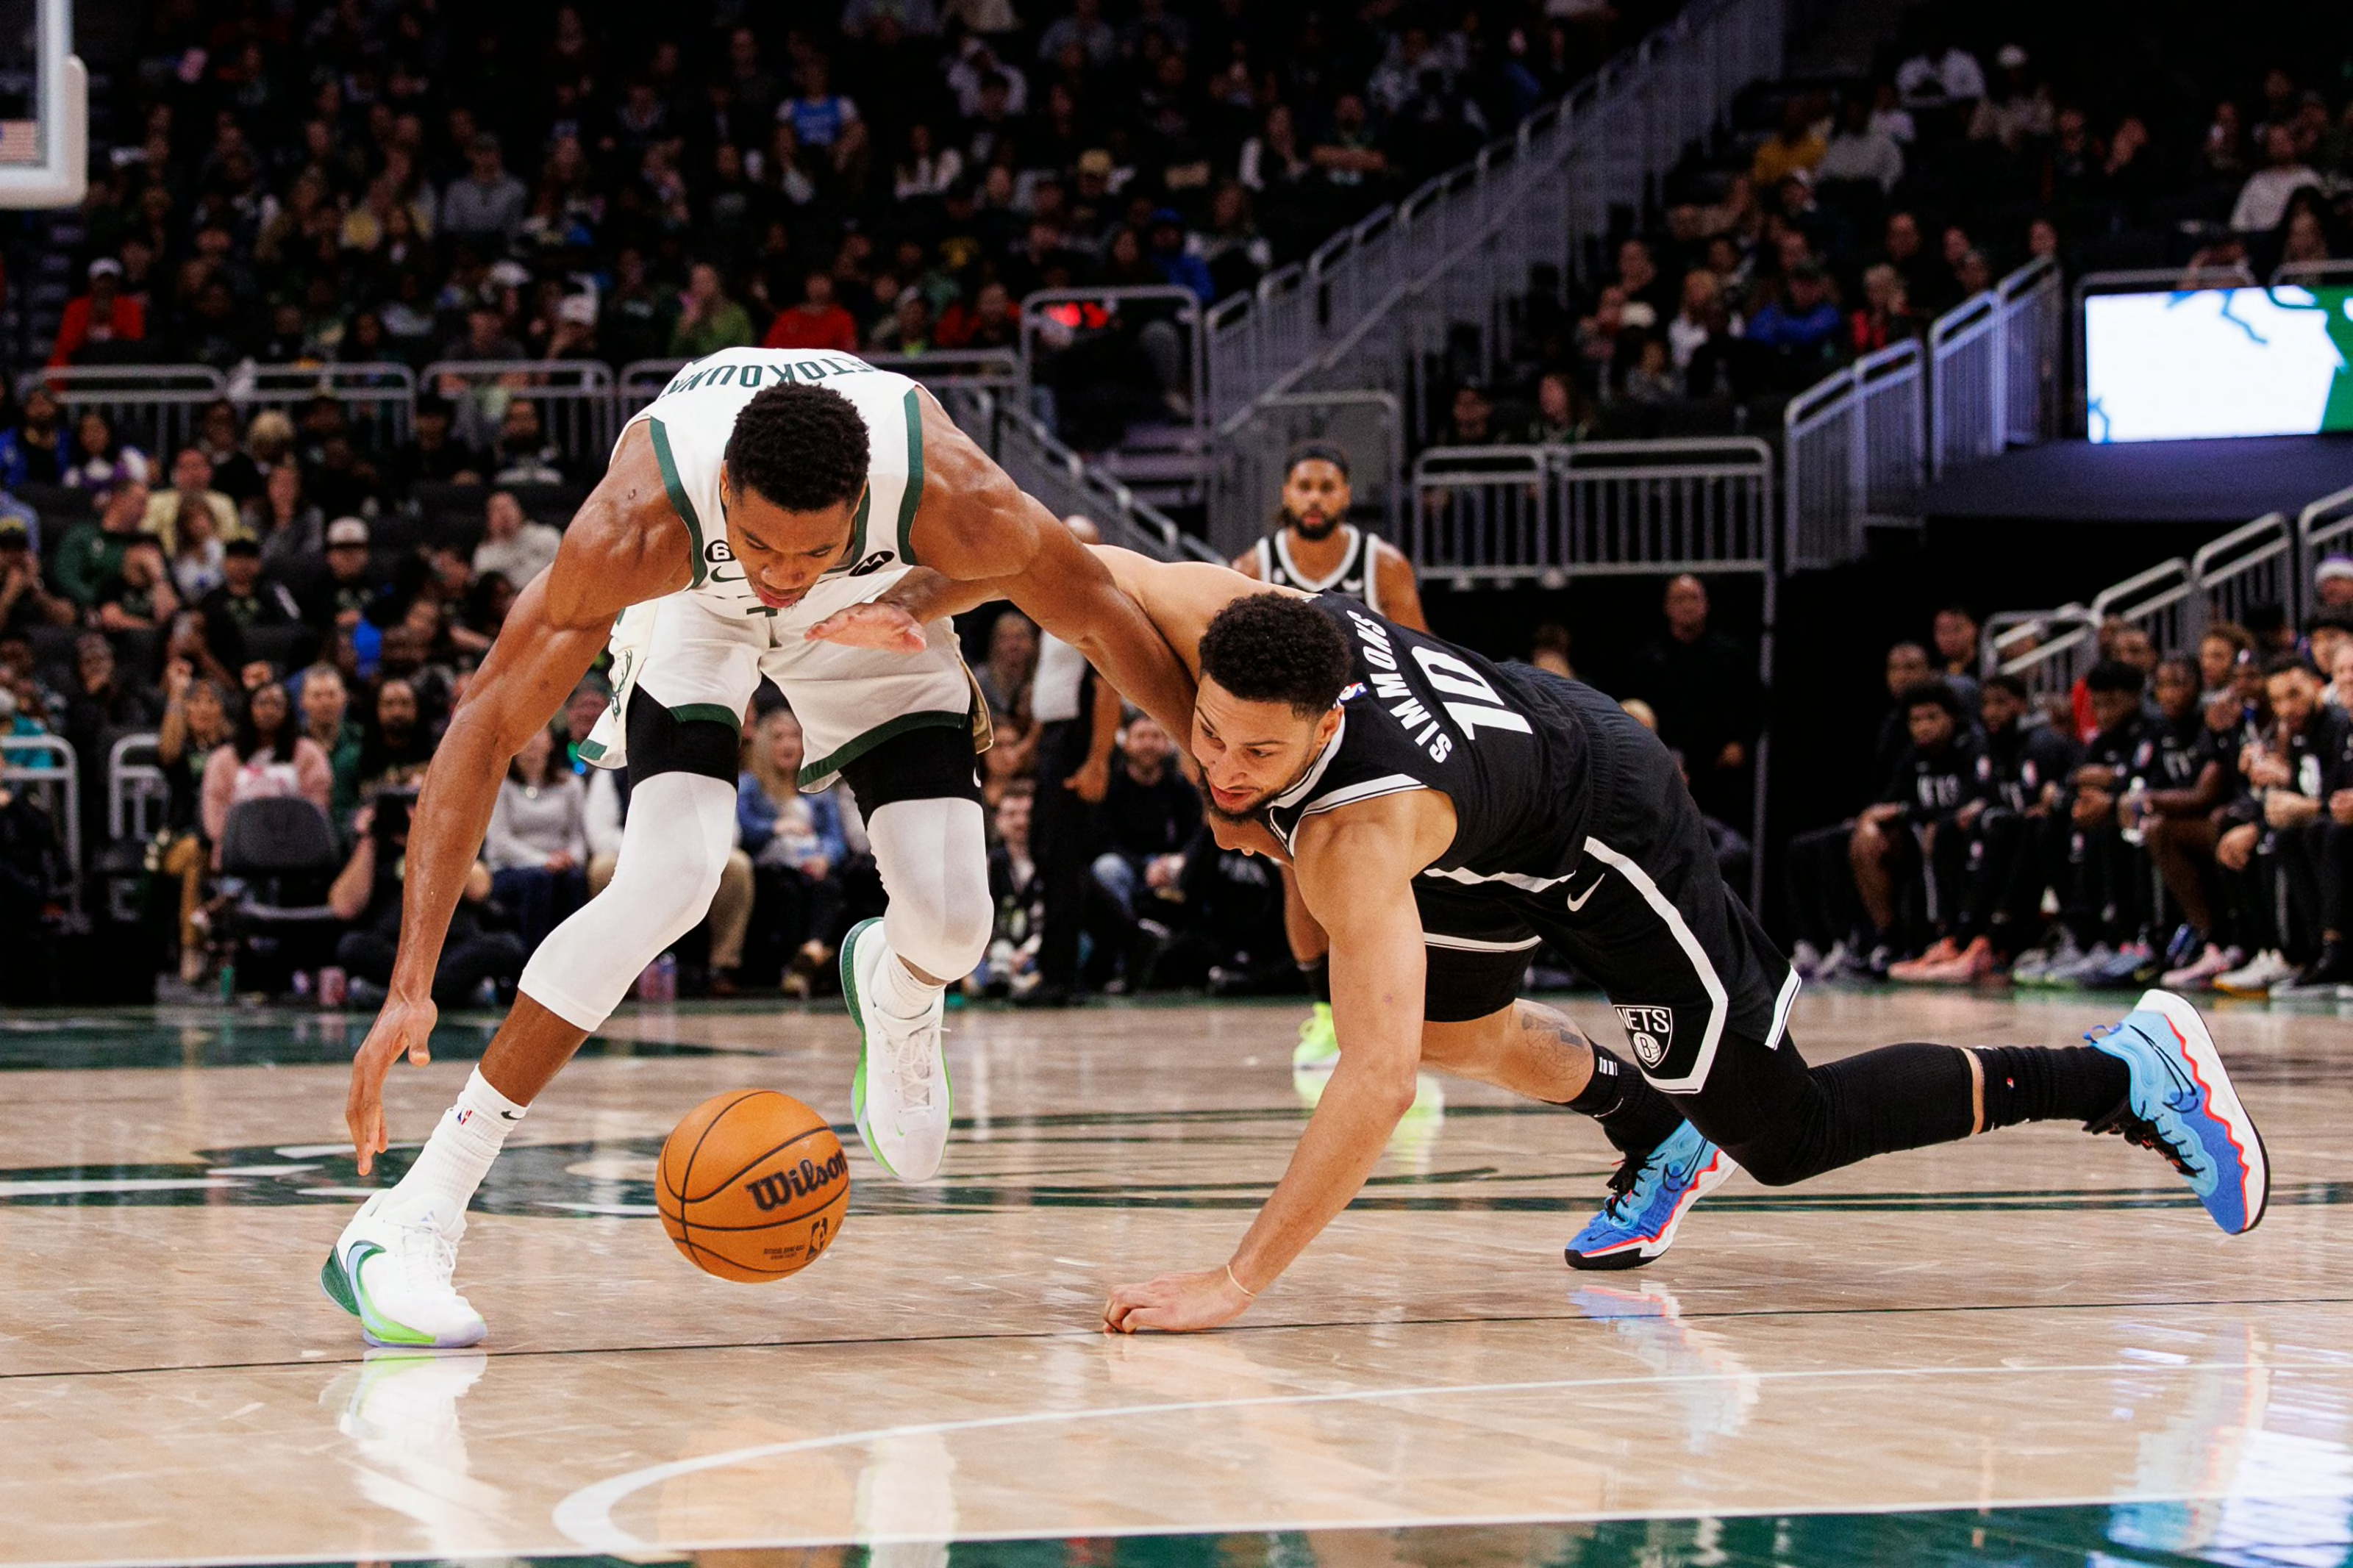 Jordan Liem on X: My picks for tonight's games! Brooklyn Nets